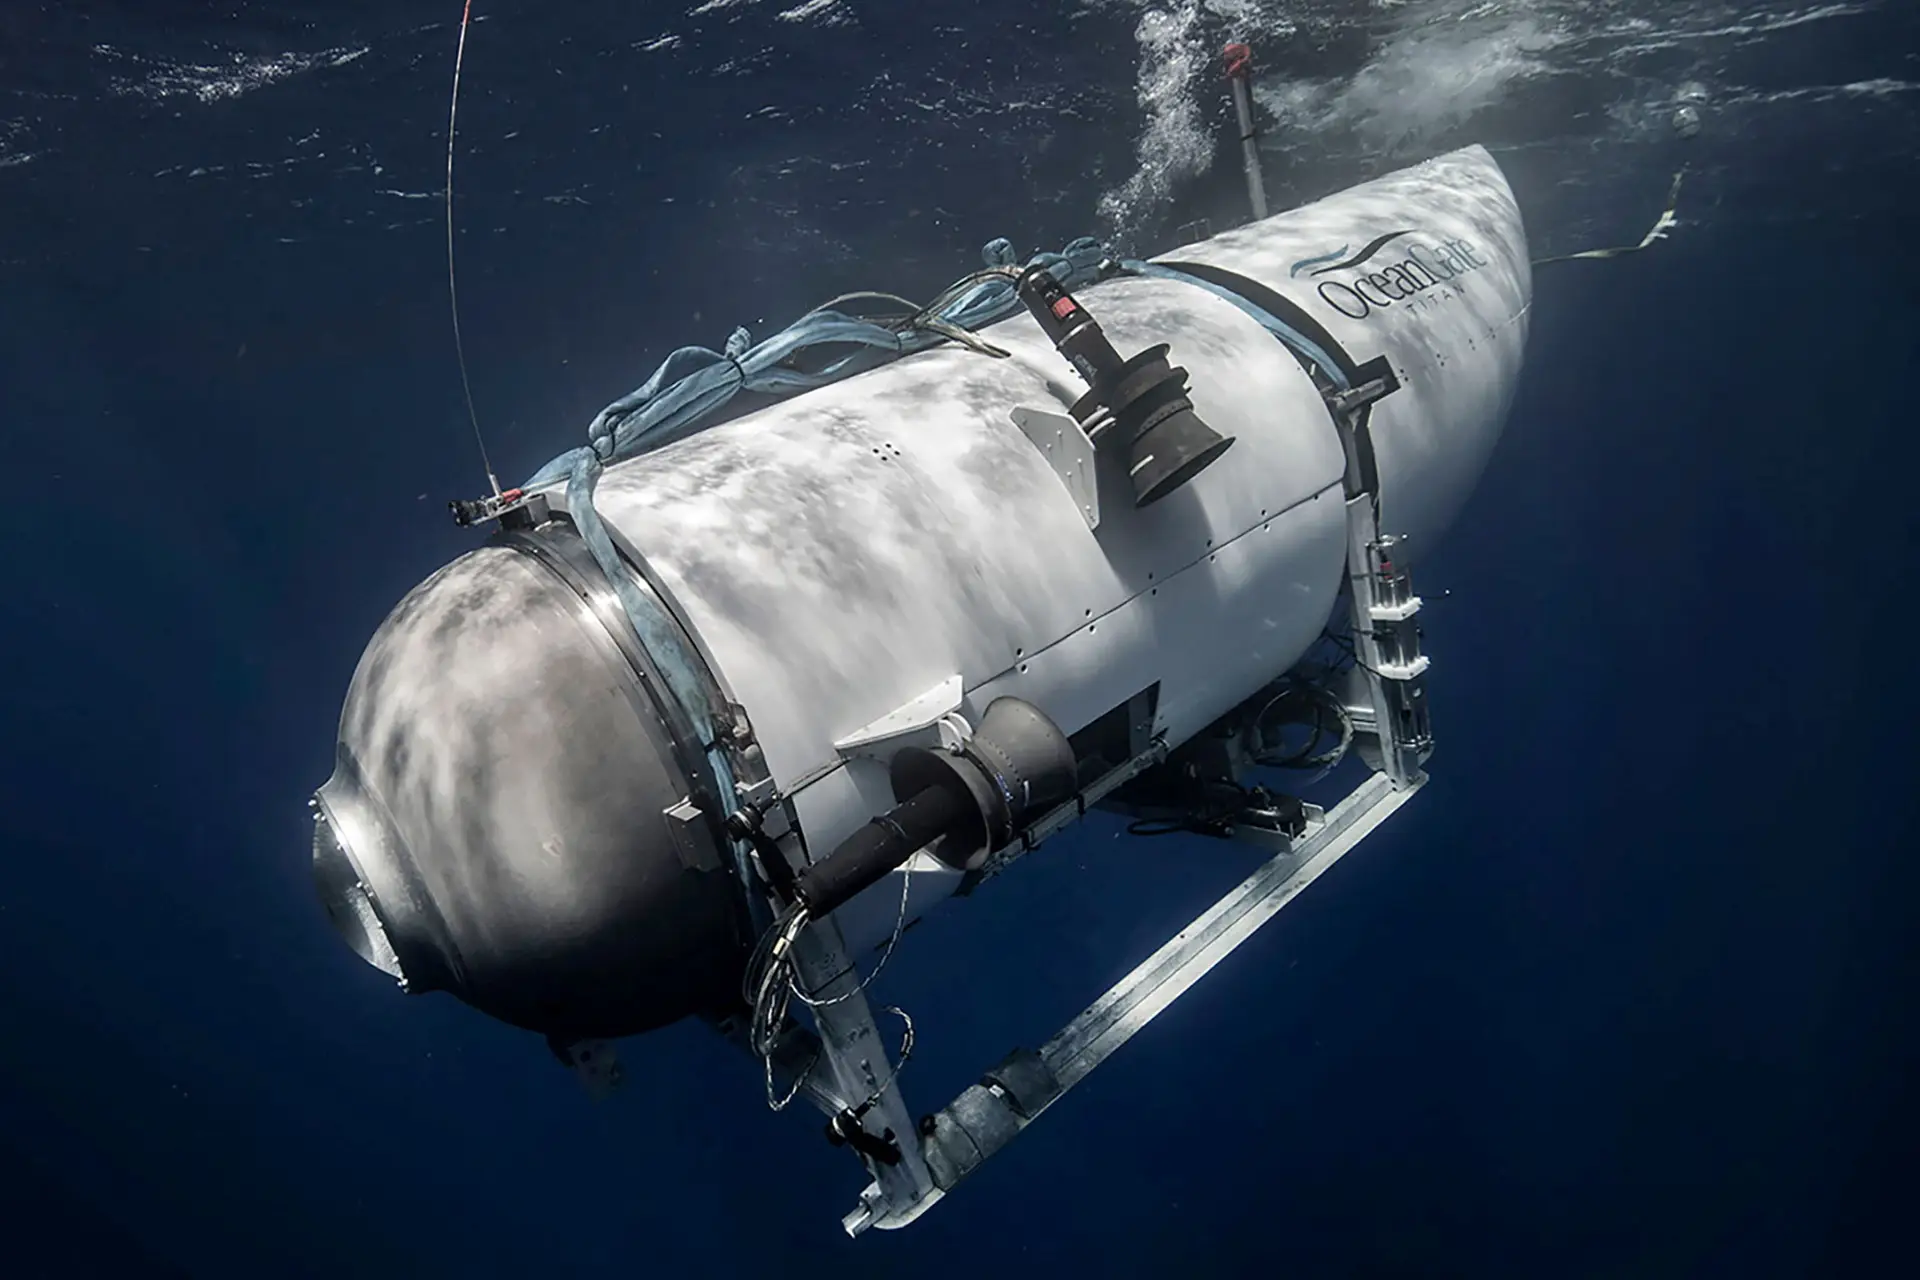 Passageiros do submersível Titan souberam de implosão 1 minuto antes